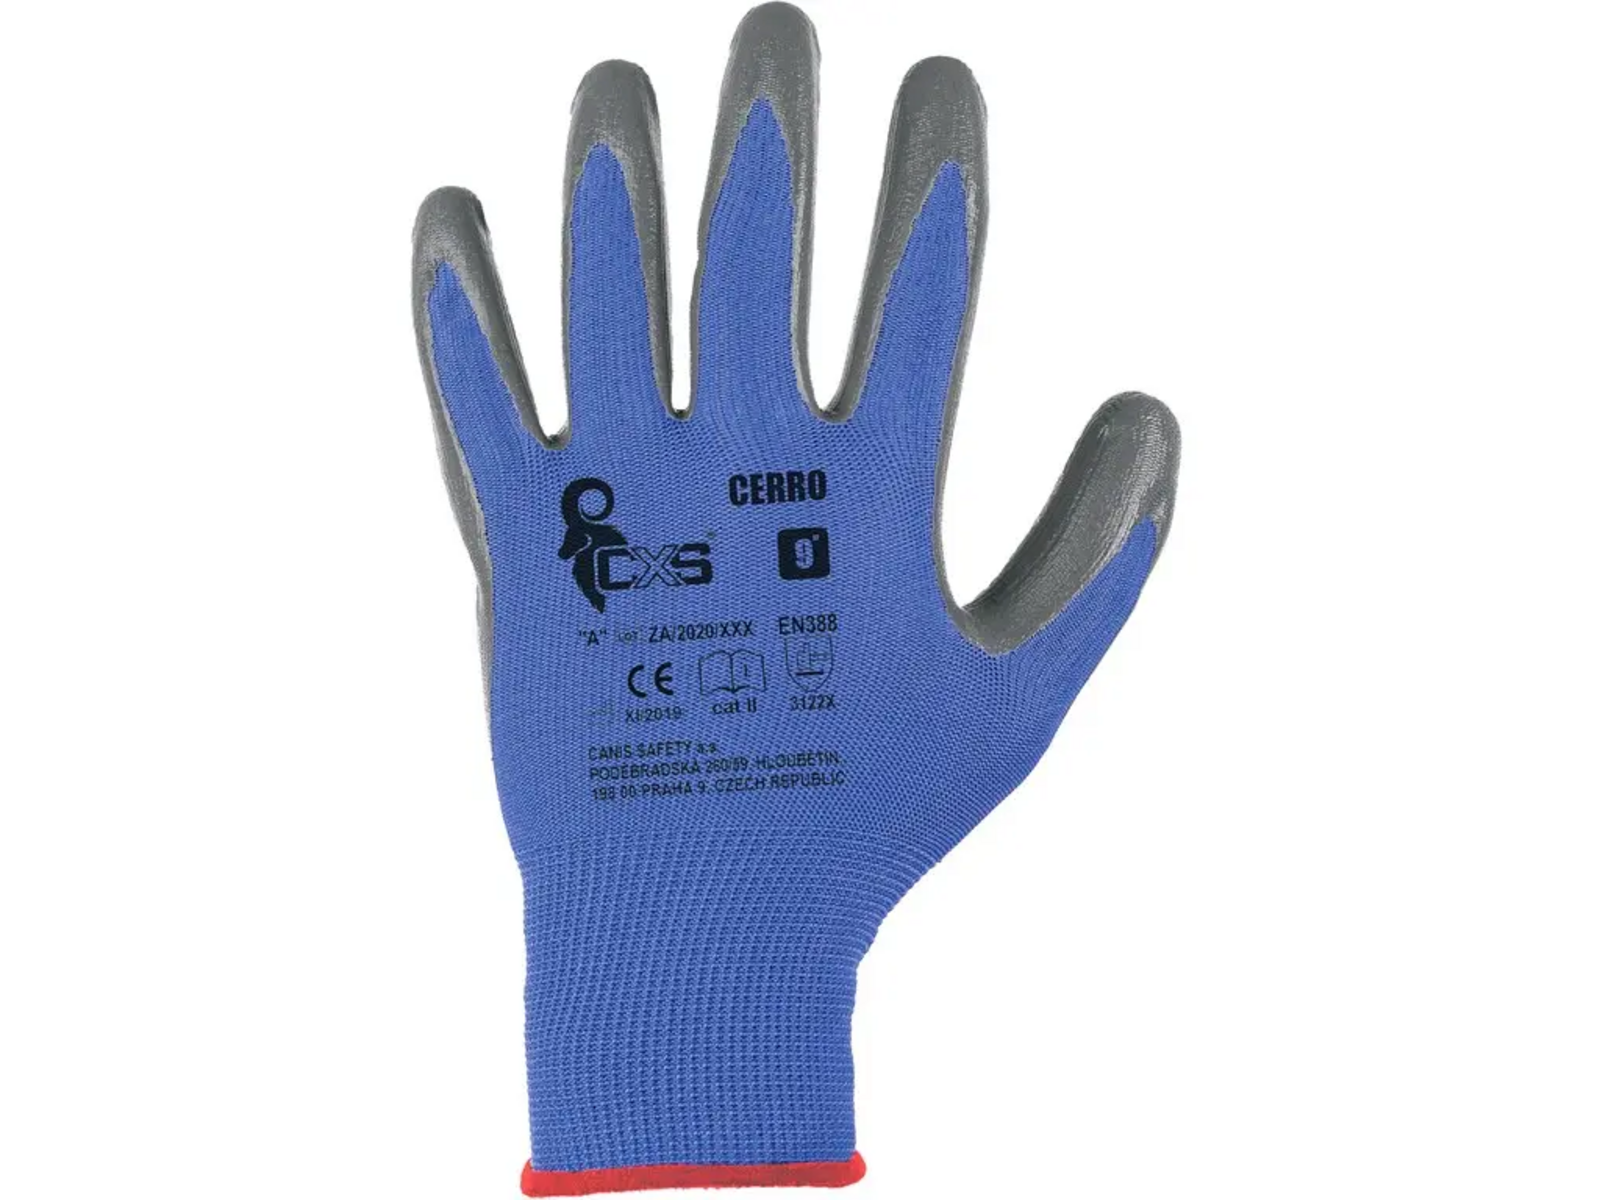 Povrstvené rukavice CXS Cerro - veľkosť: 7/S, farba: modrá/sivá